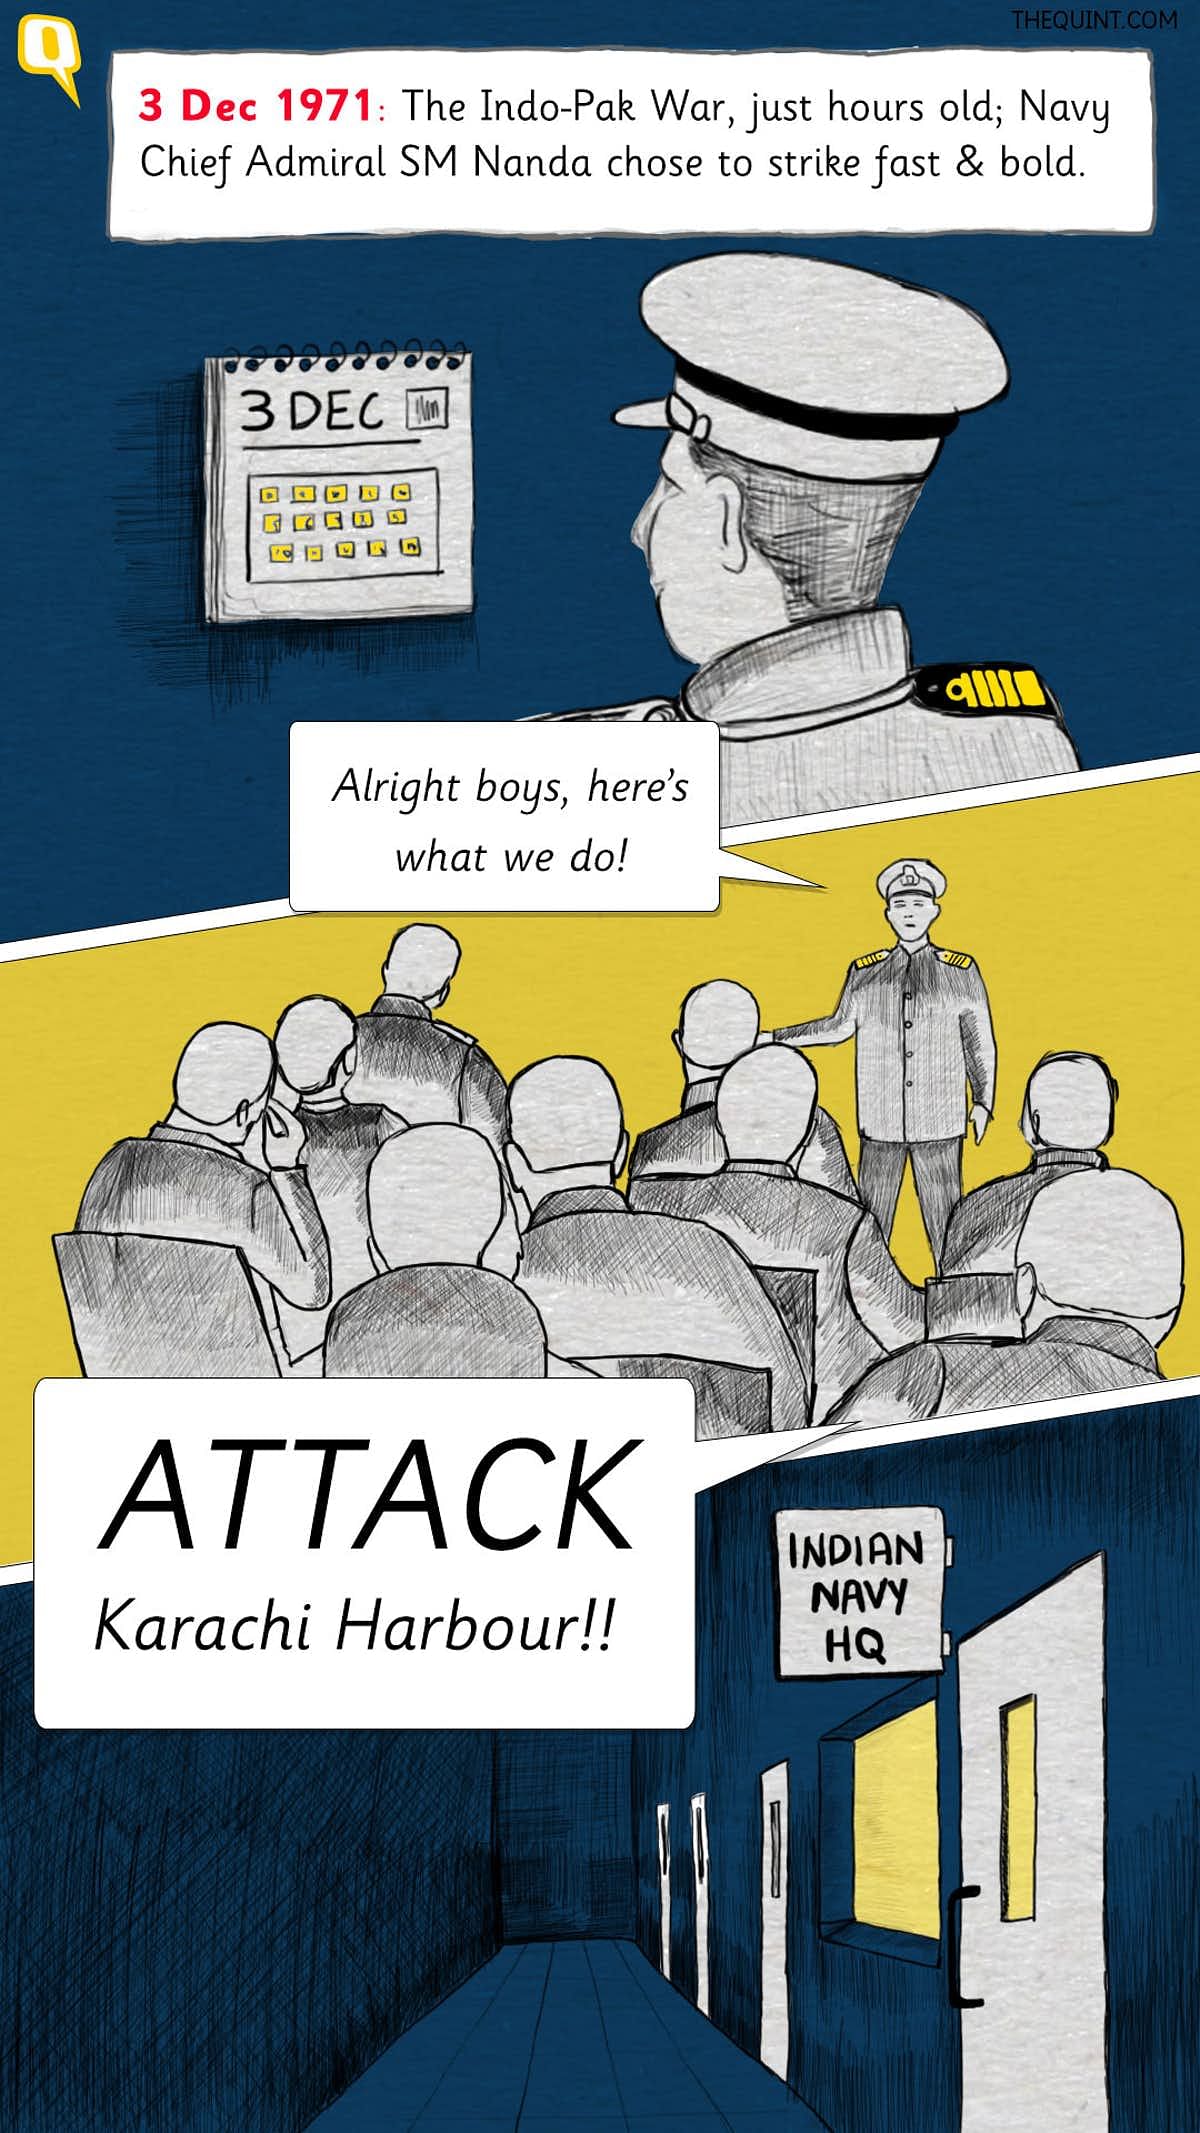 कॉमिक्स में जानिए उस लड़ाई की कहानी जिसमें पाकिस्तानी नेवी की बुरी हार हुई थी.